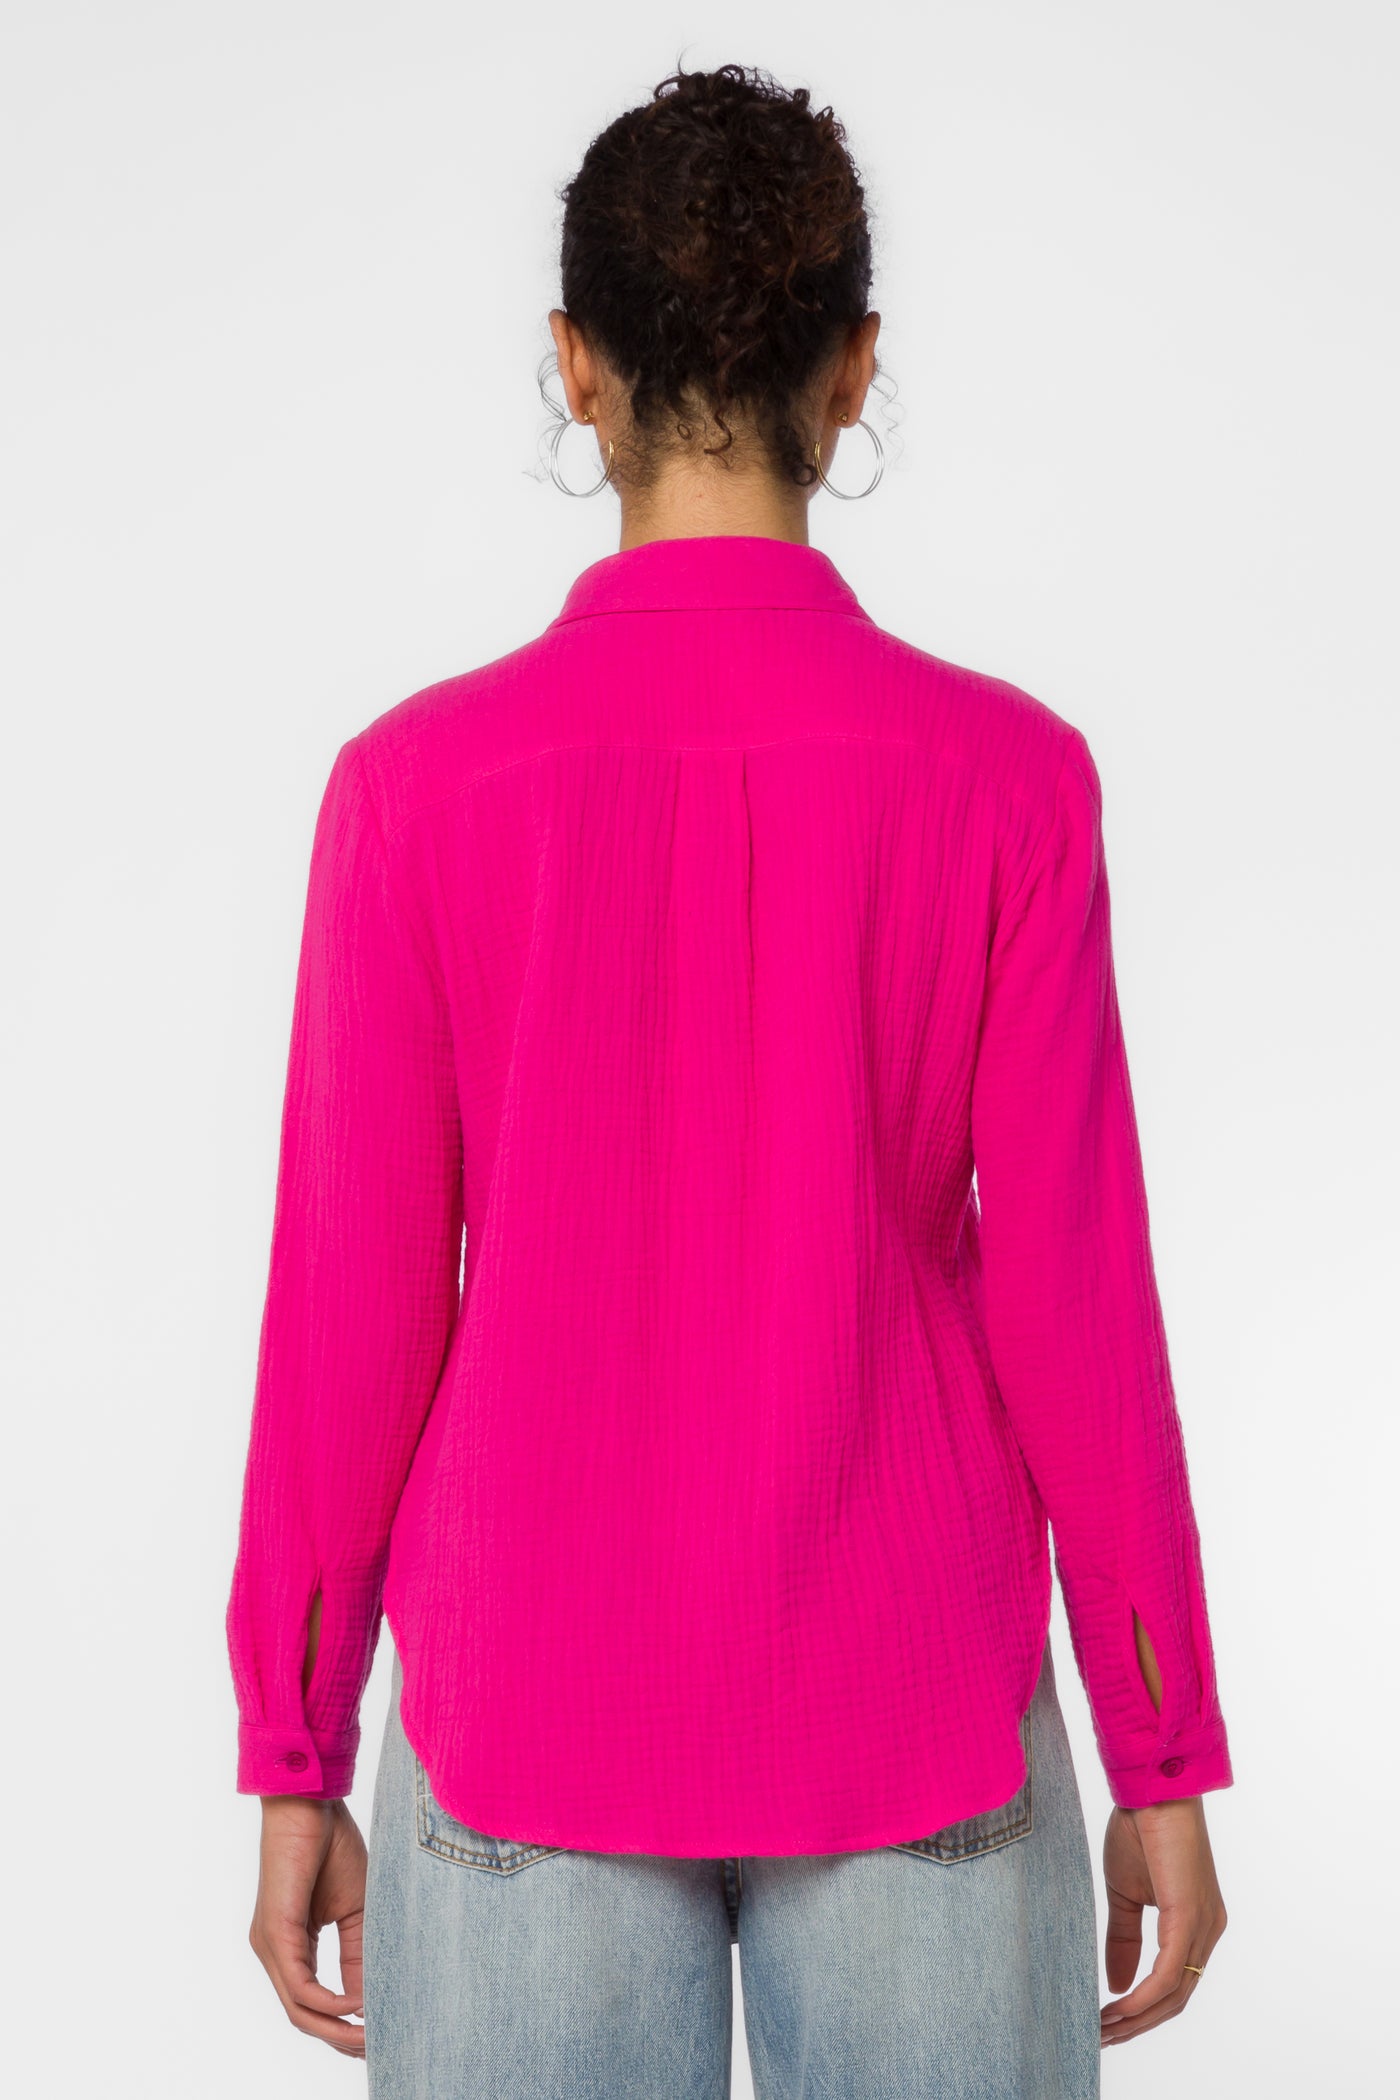 Natalie Pinkberry Shirt - Tops - Velvet Heart Clothing